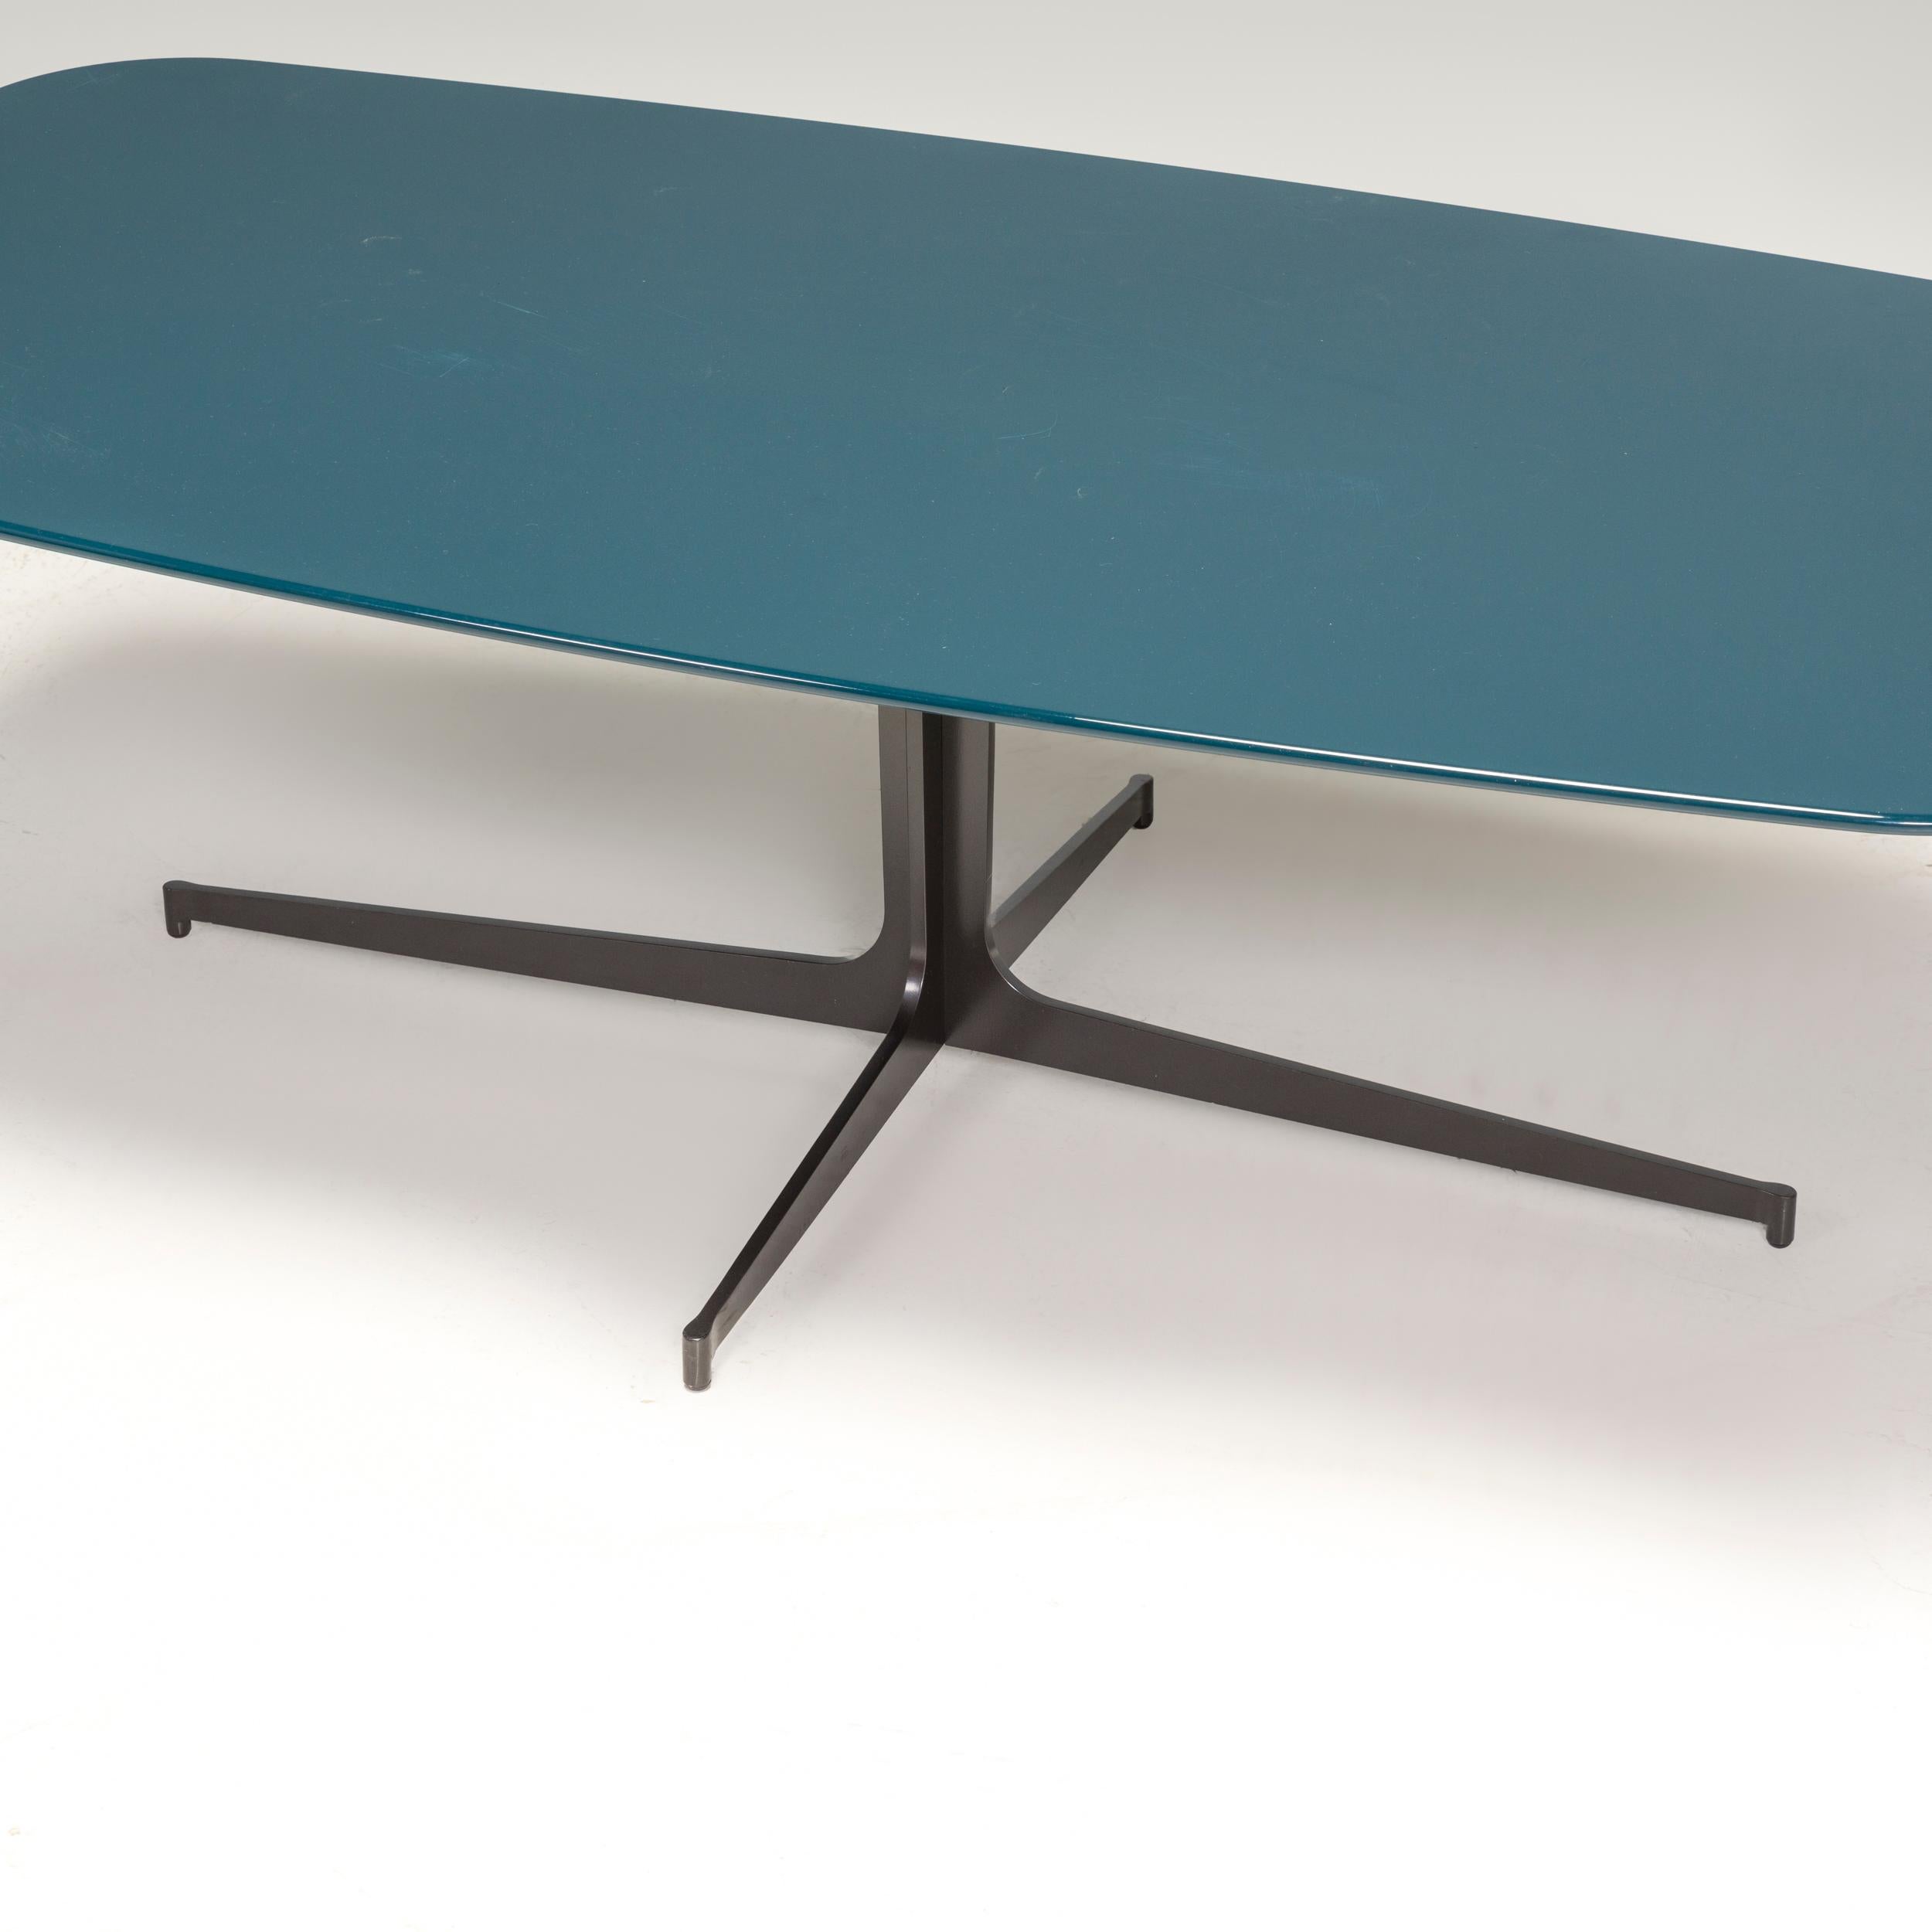 Originariamente disegnato da Rodolfo Dordoni nel 2010 e prodotto da Minotti, questo tavolino Clyfford è un fantastico esempio di design italiano contemporaneo.

Il tavolo ha una base in metallo tagliato al laser con finitura peltro opaco e quattro